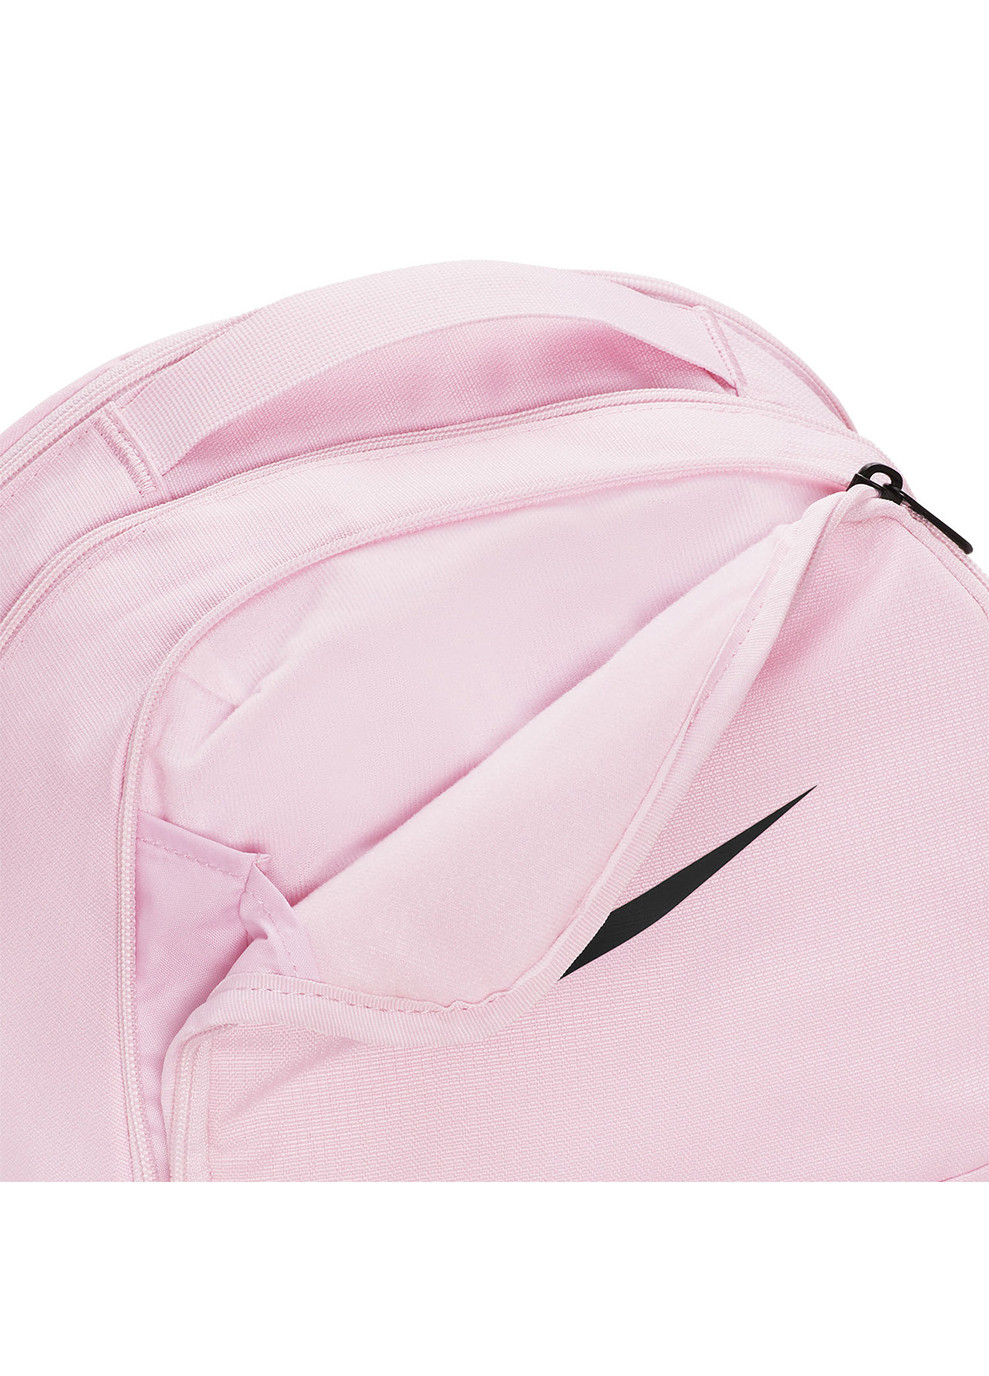 Рюкзак Brasilia 9.5 Training Backpack (Medium, 24L) ( DH7709-663) Nike  розовая ‣ Купить в интернет-магазине Каста ‣ Киев, Одесса, Харьков ‣  Доставка по всей Украине! (#253696141)